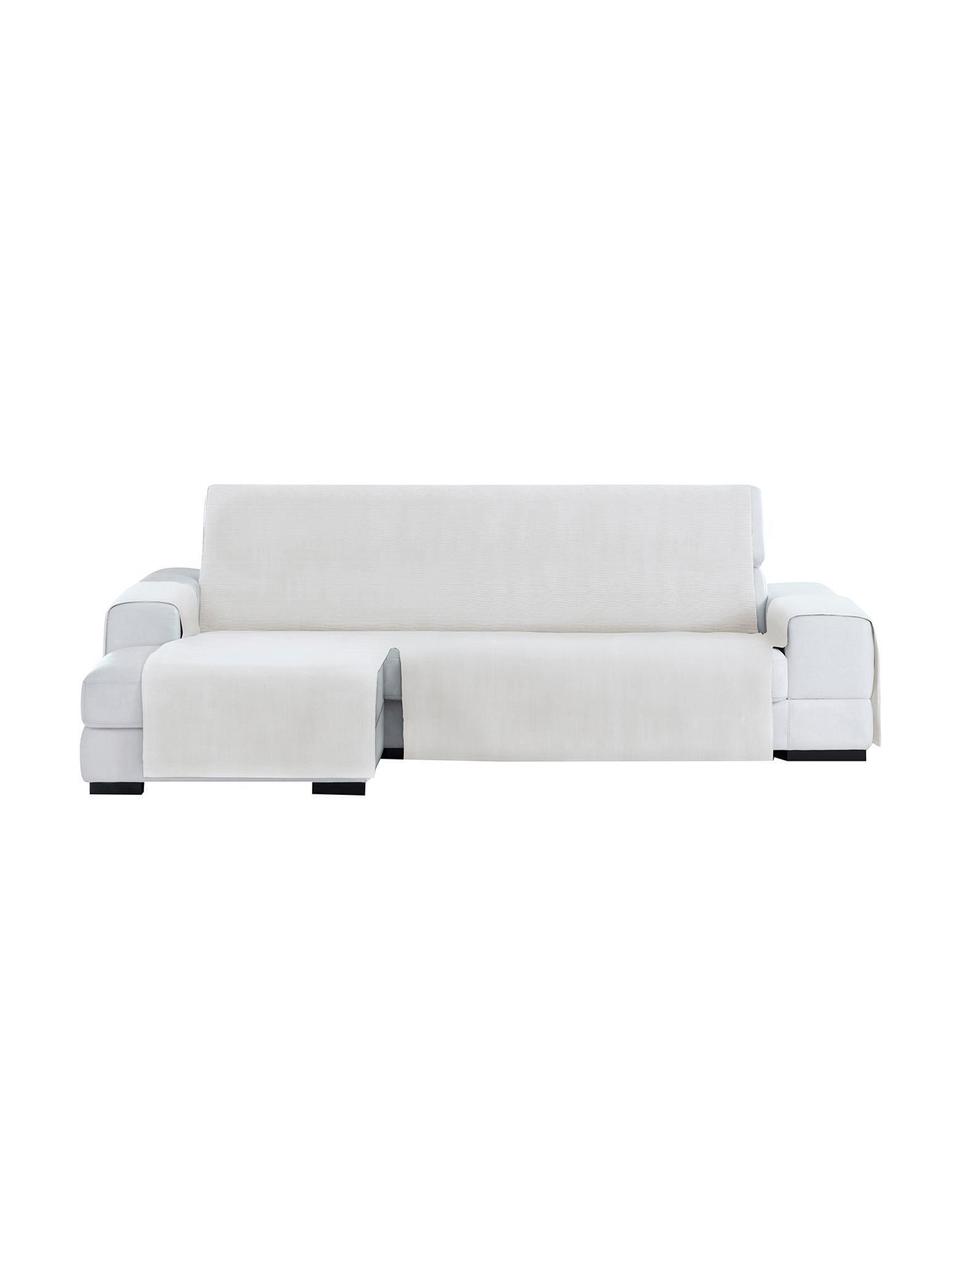 Narzuta na sofę narożną Levante, 65% bawełna, 35% poliester, Odcienie kremowego, S 150 x D 290 cm, prawostronna